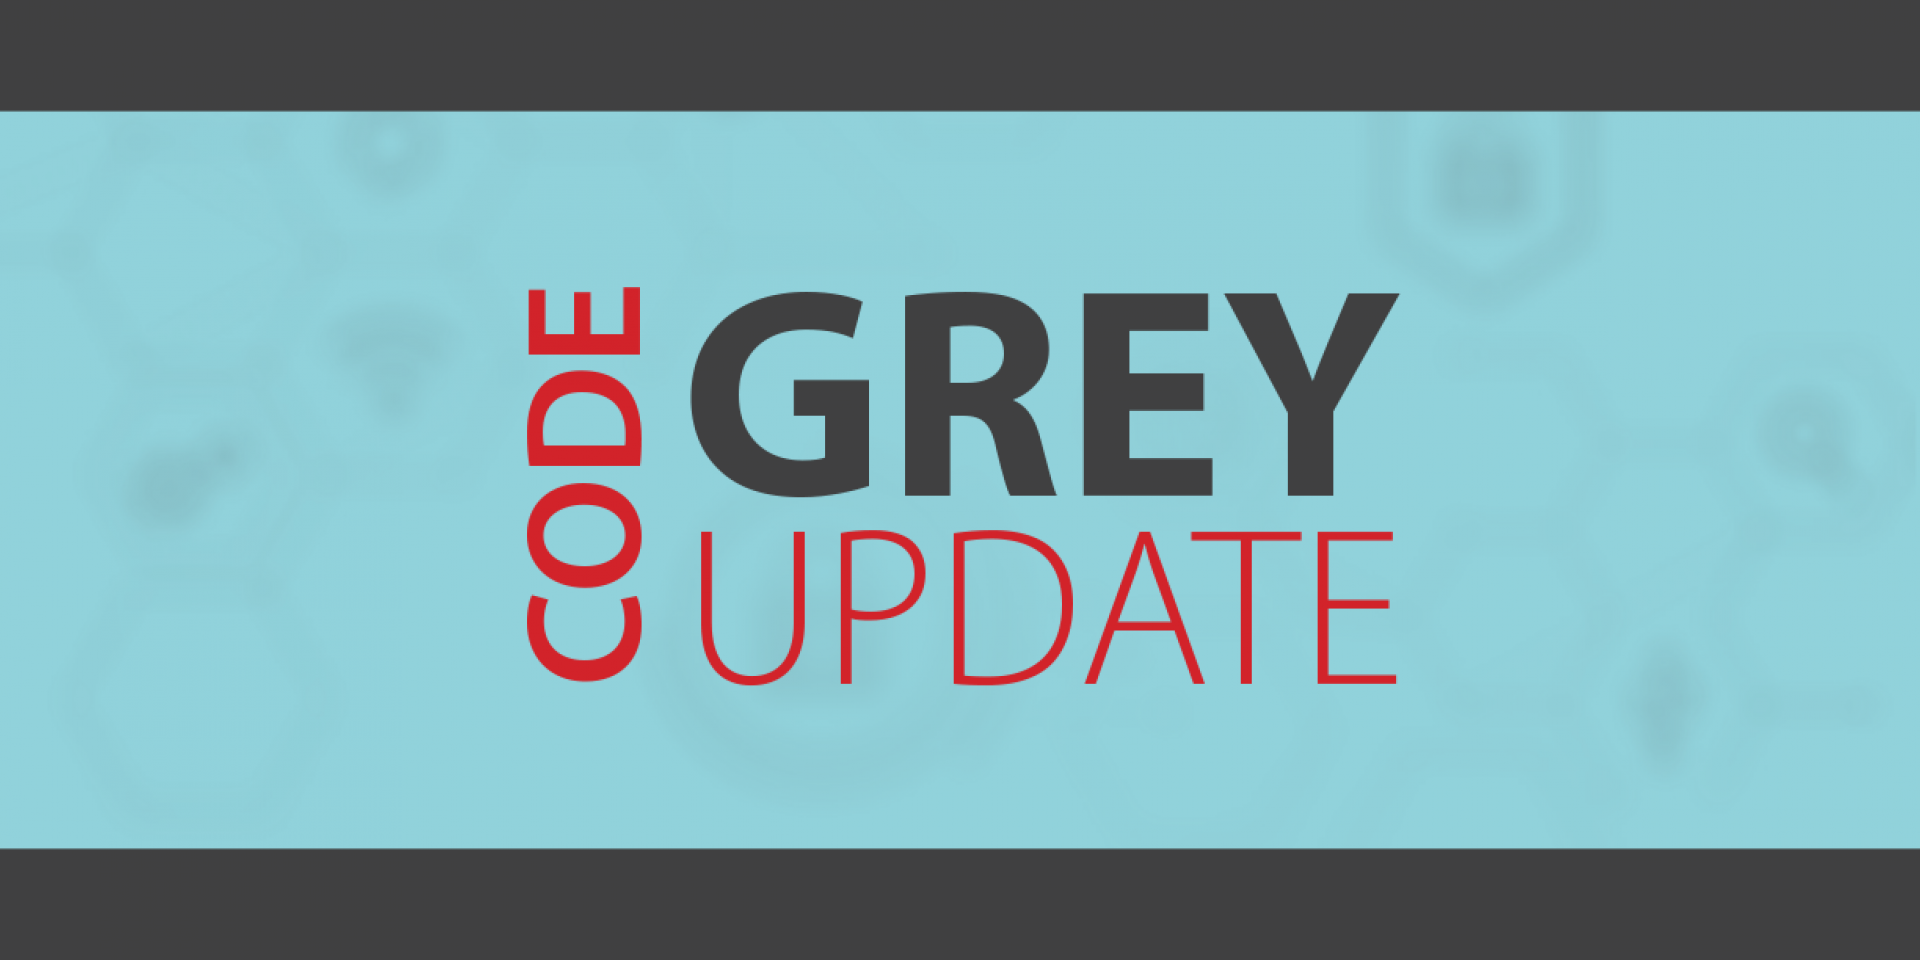 Code Grey Update